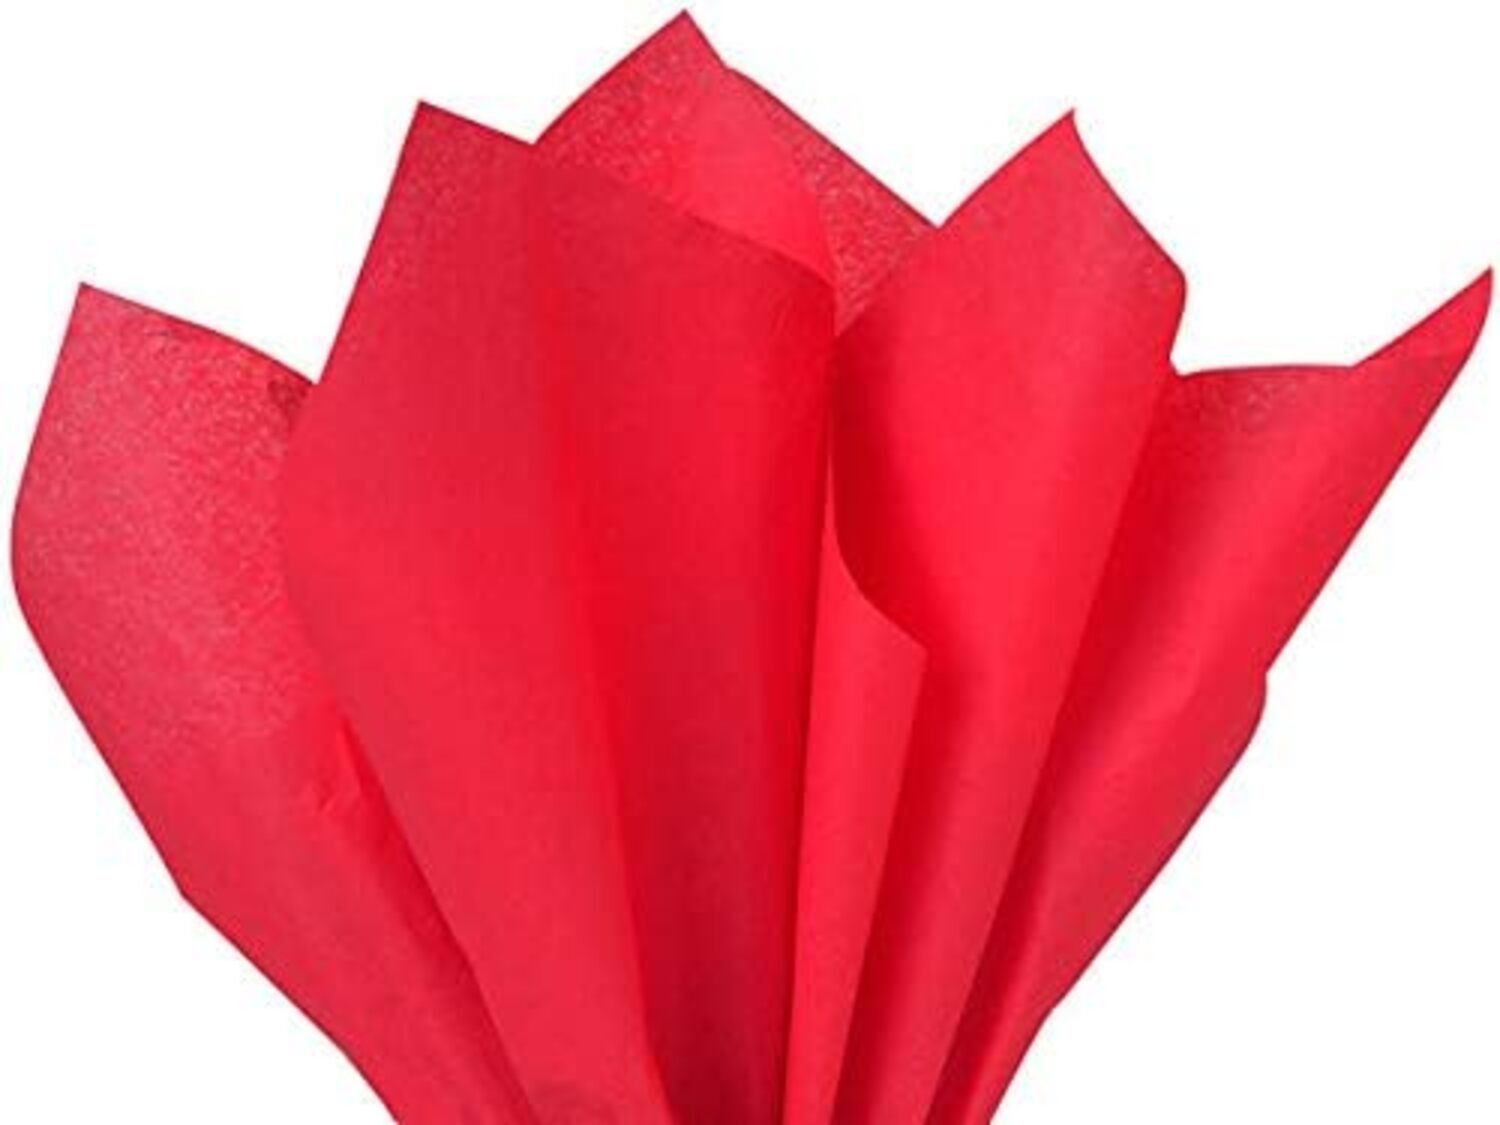 Pelur Kağıt - Kırmızı 17 gr/m. 50*70 cm - 25'li Paket